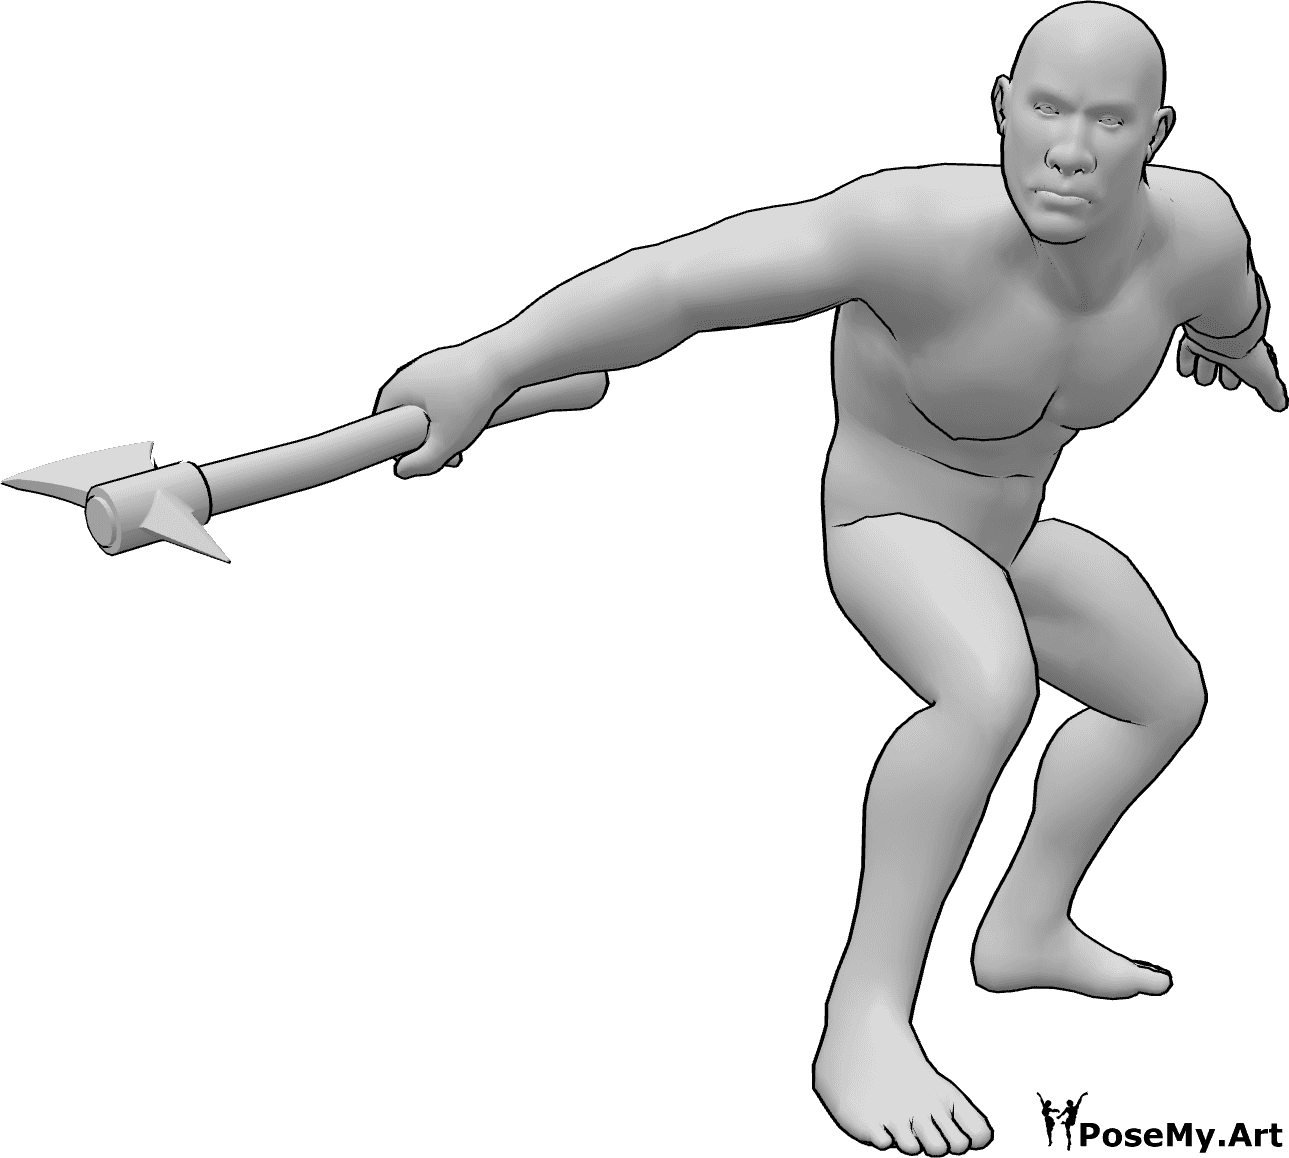 Riferimento alle pose- Posa dell'ascia maschile bruta - Maschio bruto pronto ad attaccare con un'ascia in posa